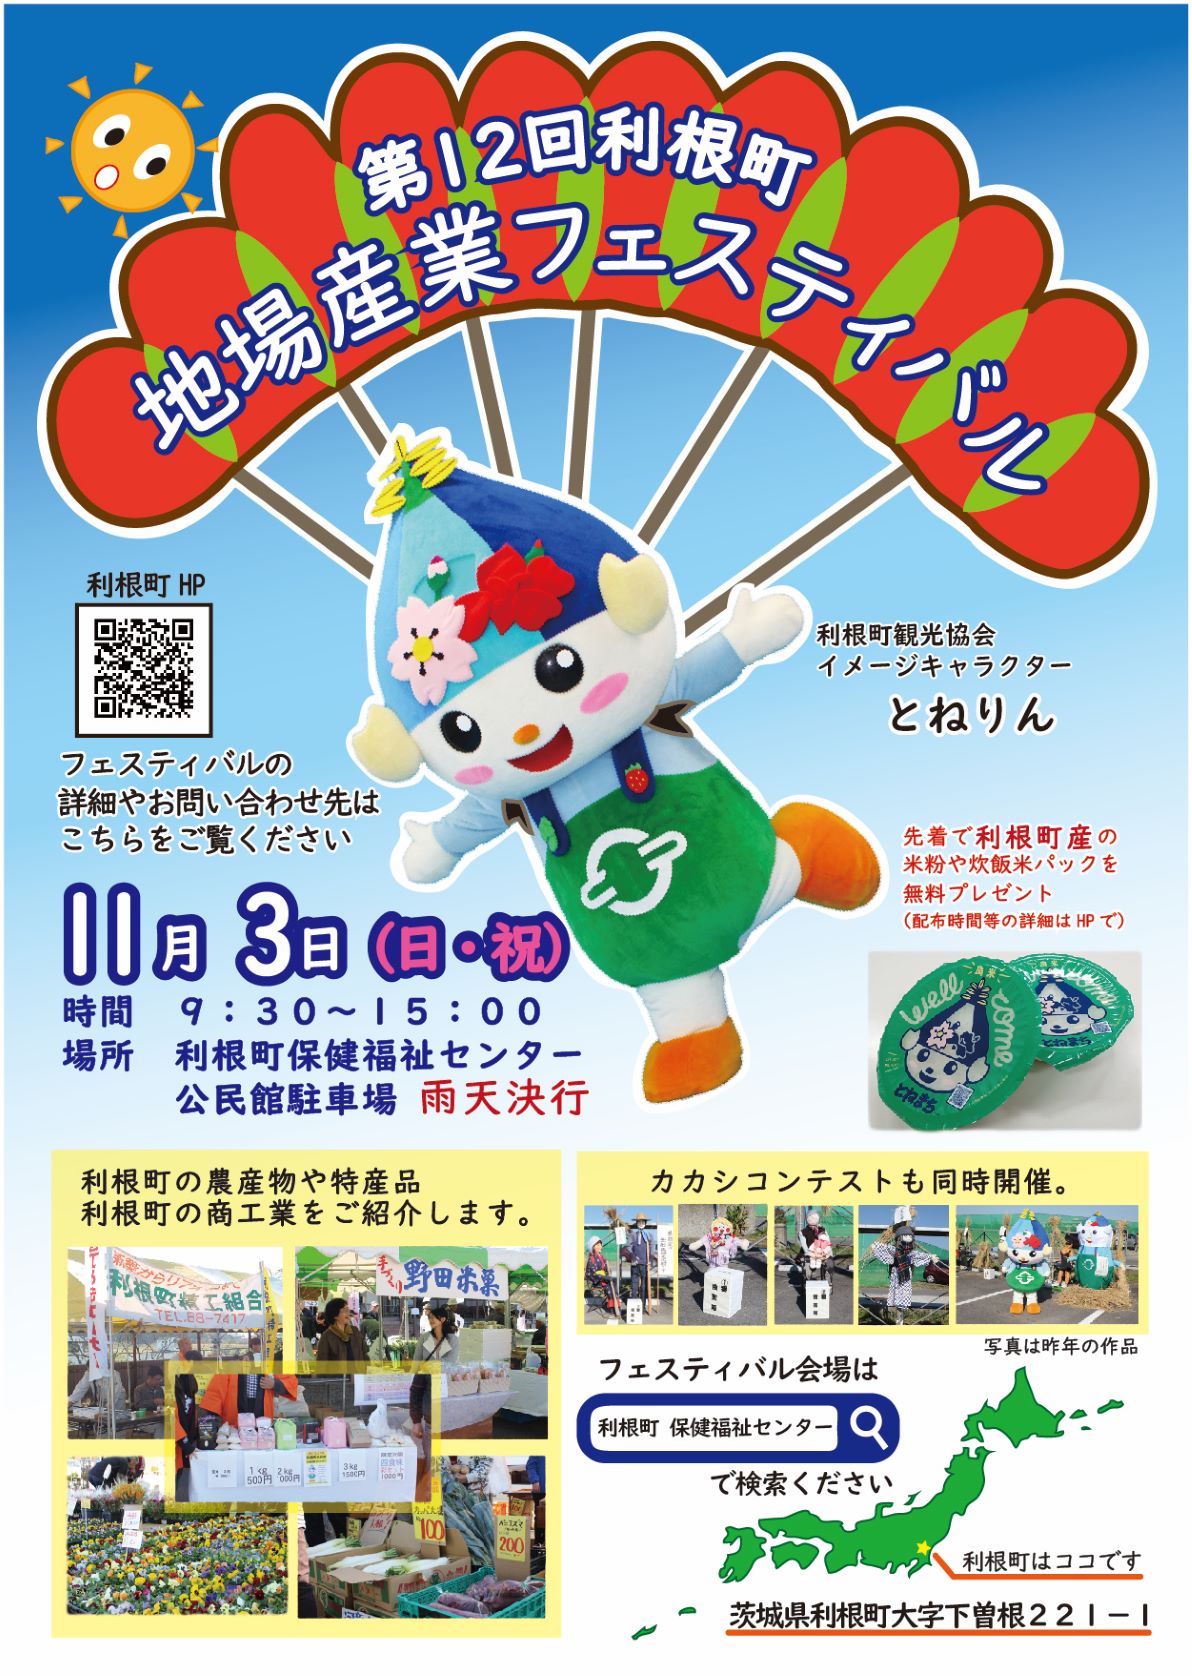 茨城県利根町 地場産業フェスティバル 今年も開催します！ | 移住関連イベント情報